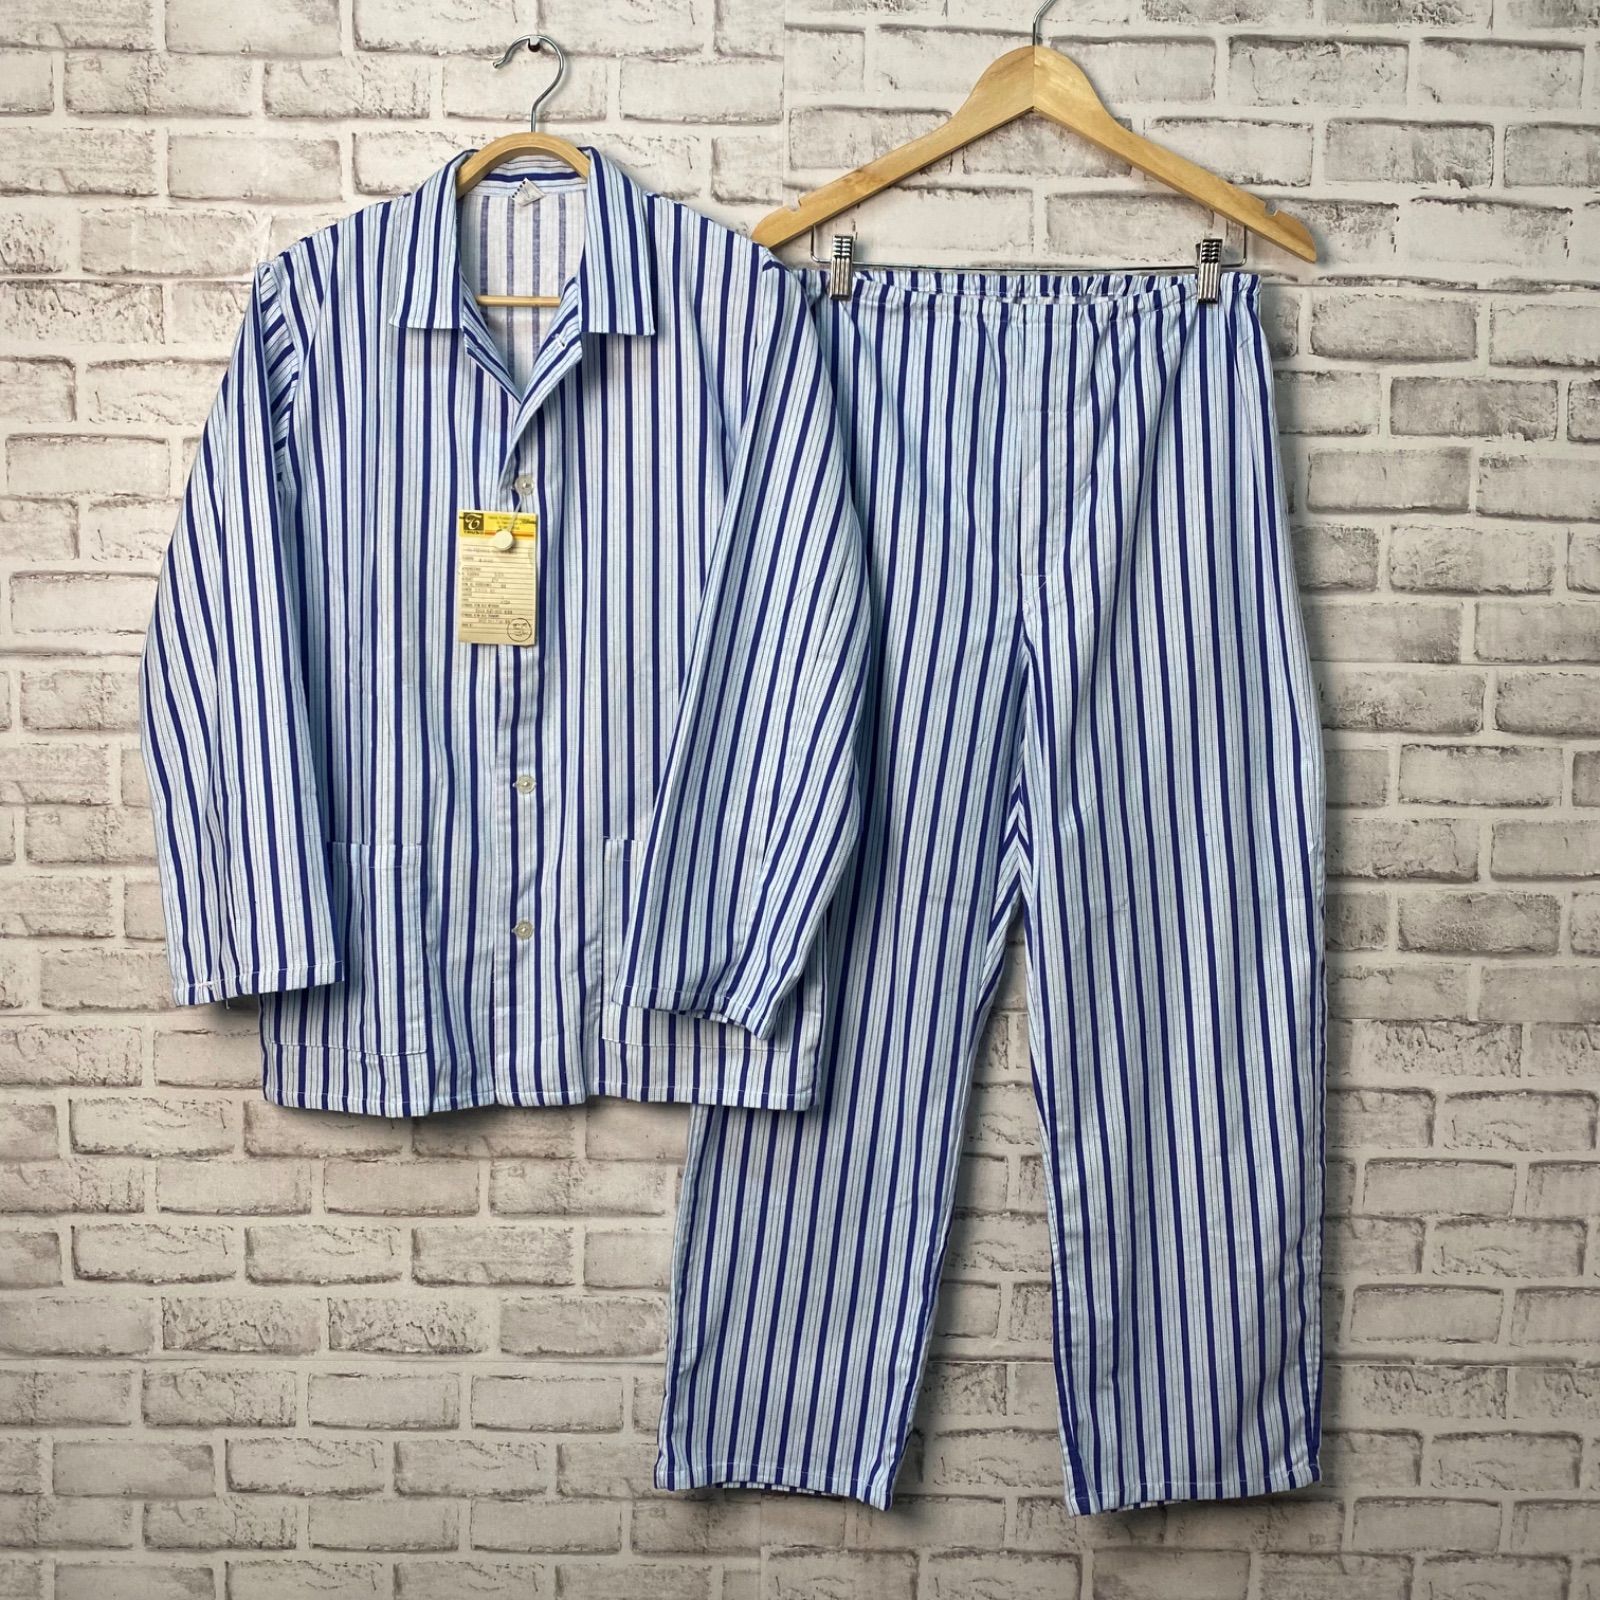 【デッドストック】70’s ポーランド軍 パジャマ セットアップ ブルー